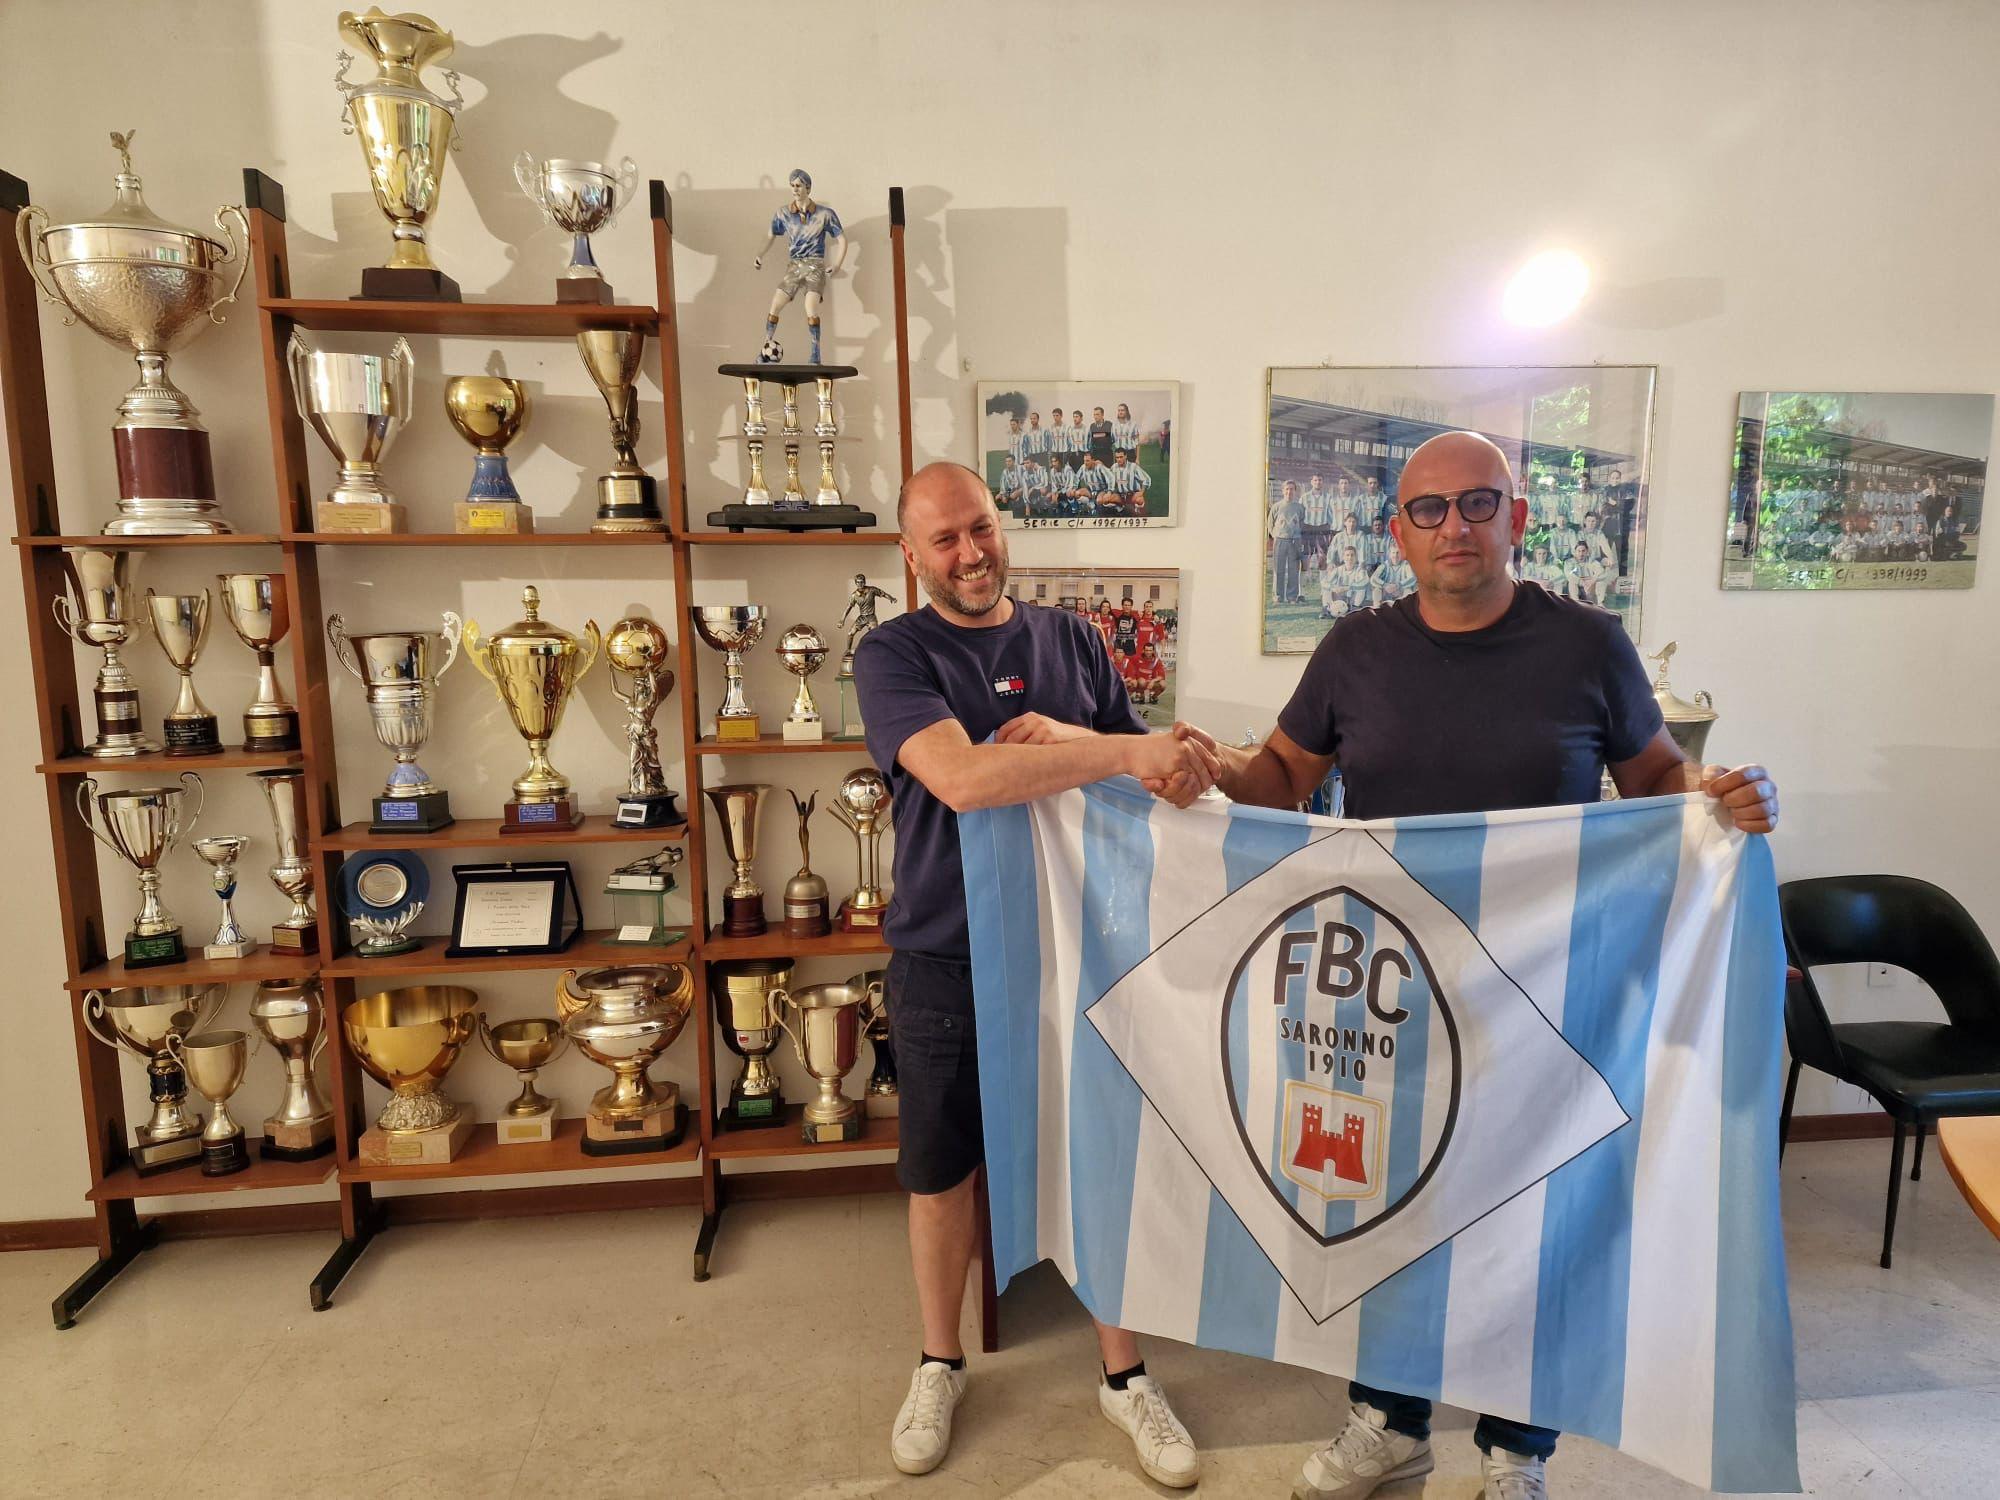 Calcio Fbc Saronno, mister Tricarico già in maglia biancoceleste: prima intervista